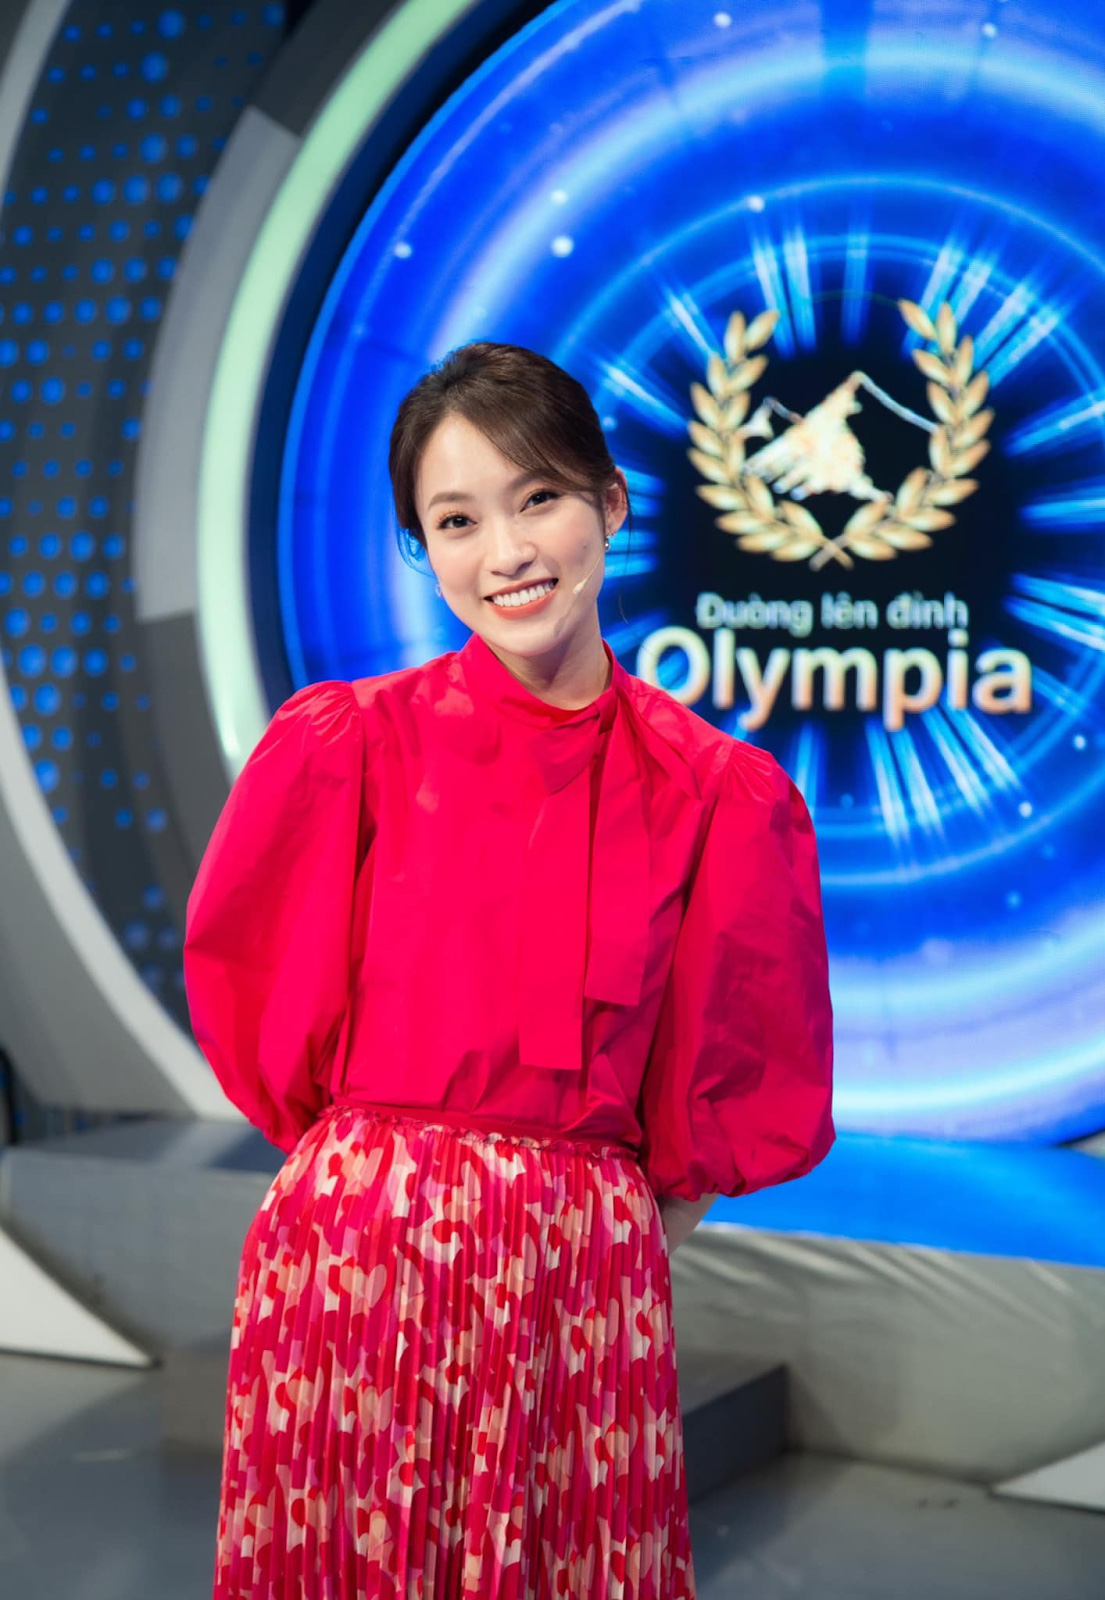 MC Khánh Vy rủ thí sinh Olympia quay trend hot trên Tóp tóp, nhan sắc sau hậu trường giật spotlight 10 điểm - Ảnh 3.